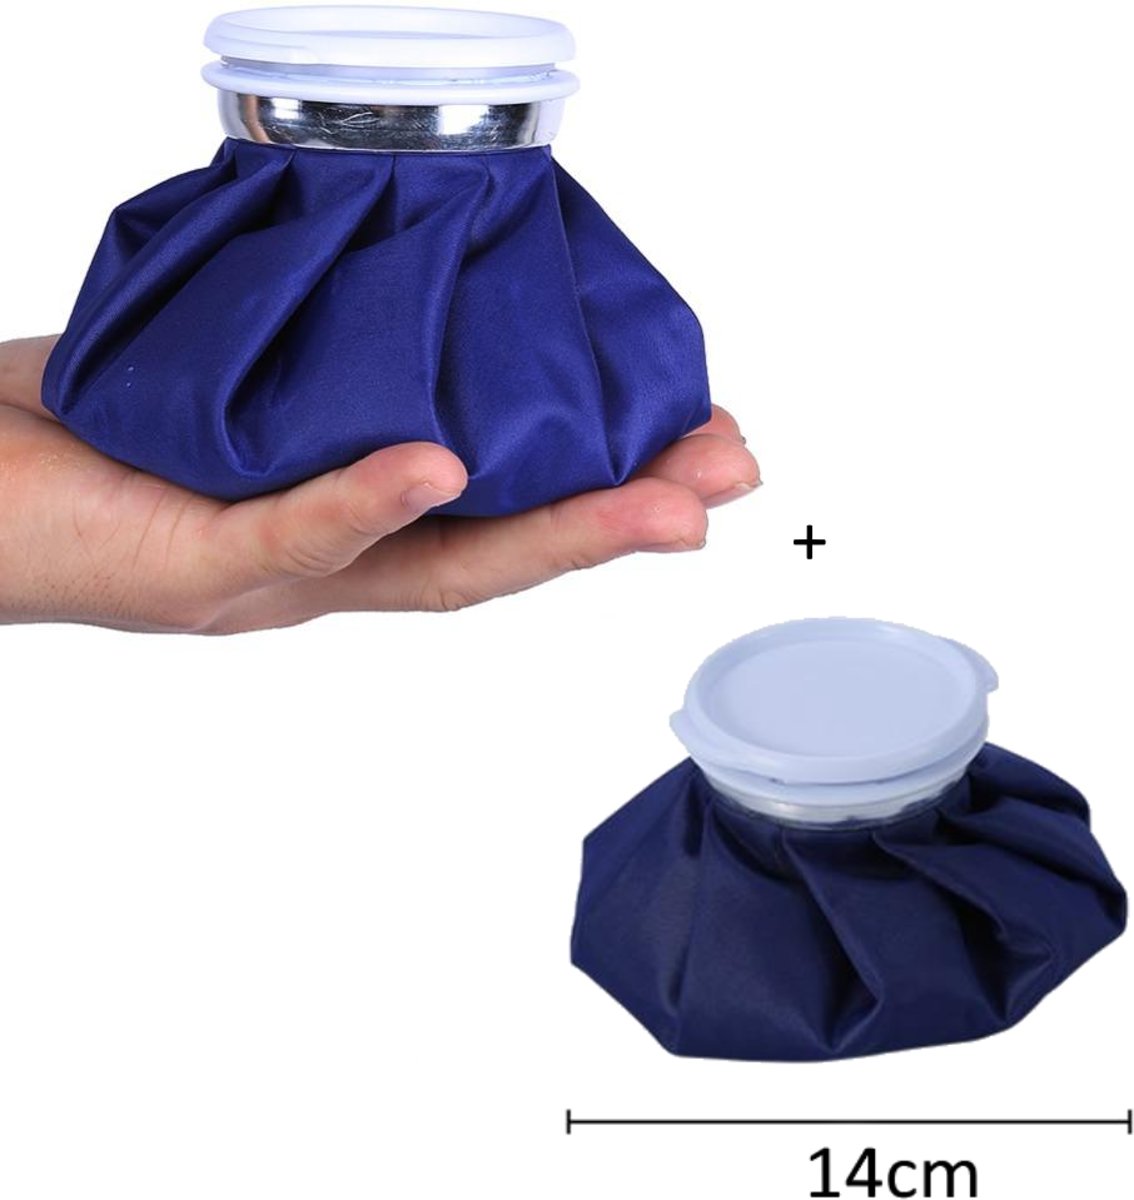 Foto van 2 stuks kleine ijs zak – ice bags tegen plaatselijke vetophopingen – tegen zwelling bij kwetsuren en hoofdpijn.